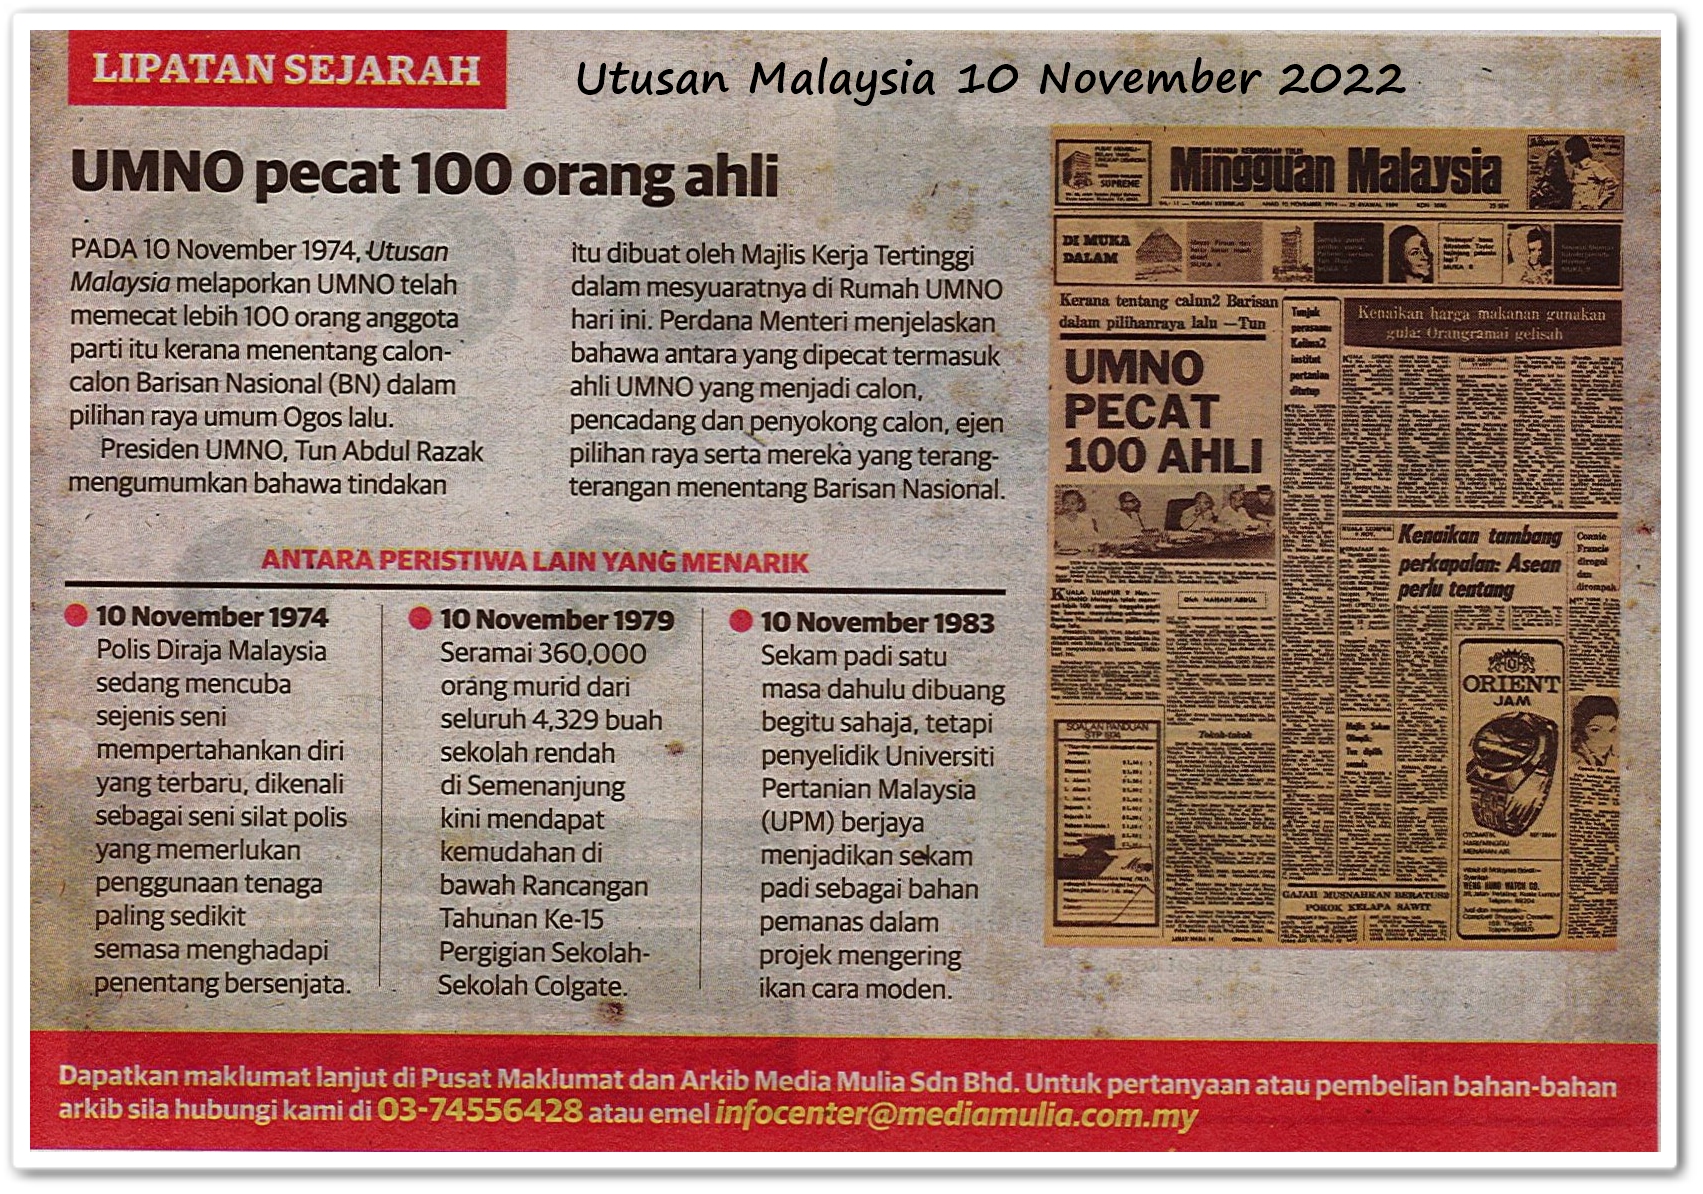 Lipatan sejarah 10 November - Keratan akhbar Utusan Malaysia 10 November 2022